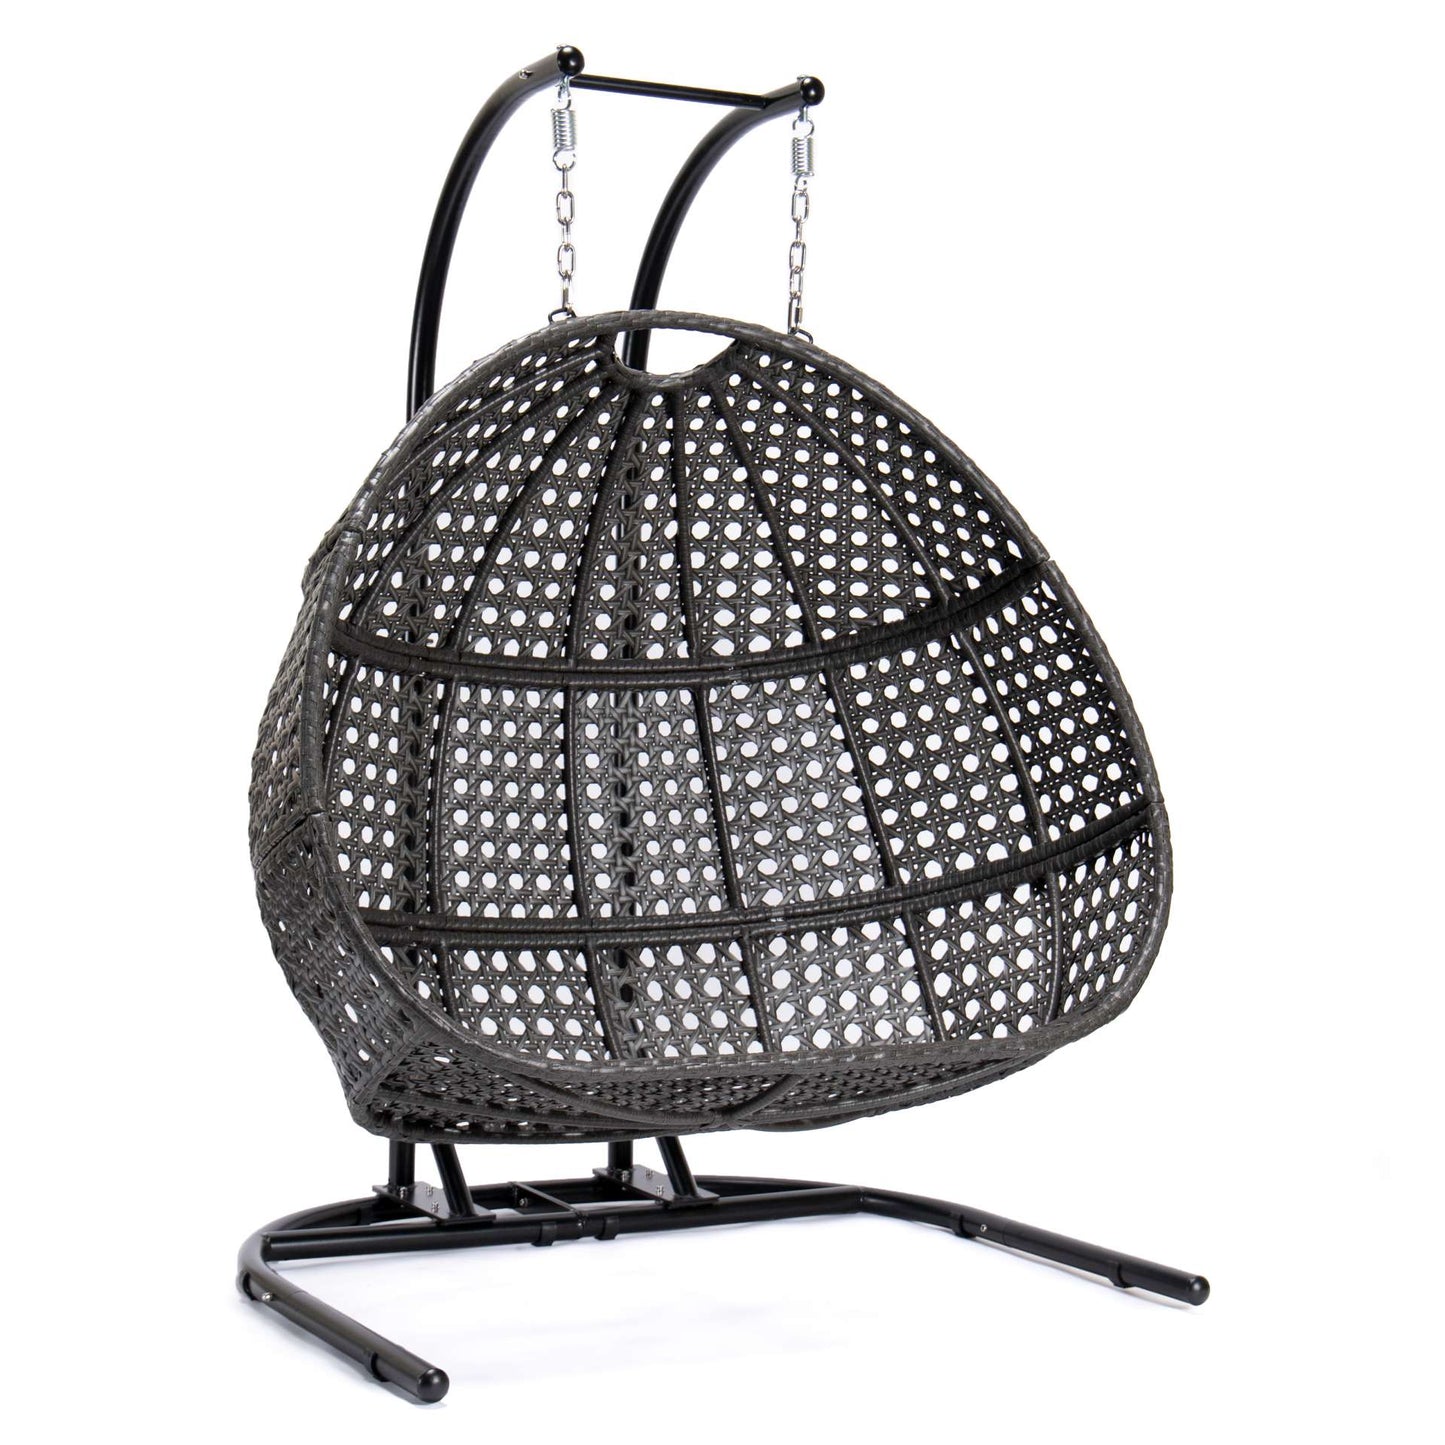 LeisureMod Wicker Hanging Double Egg Swing Chair  - EKDCH-57BR | Outdoor Porch Swings | Modishstore - 102